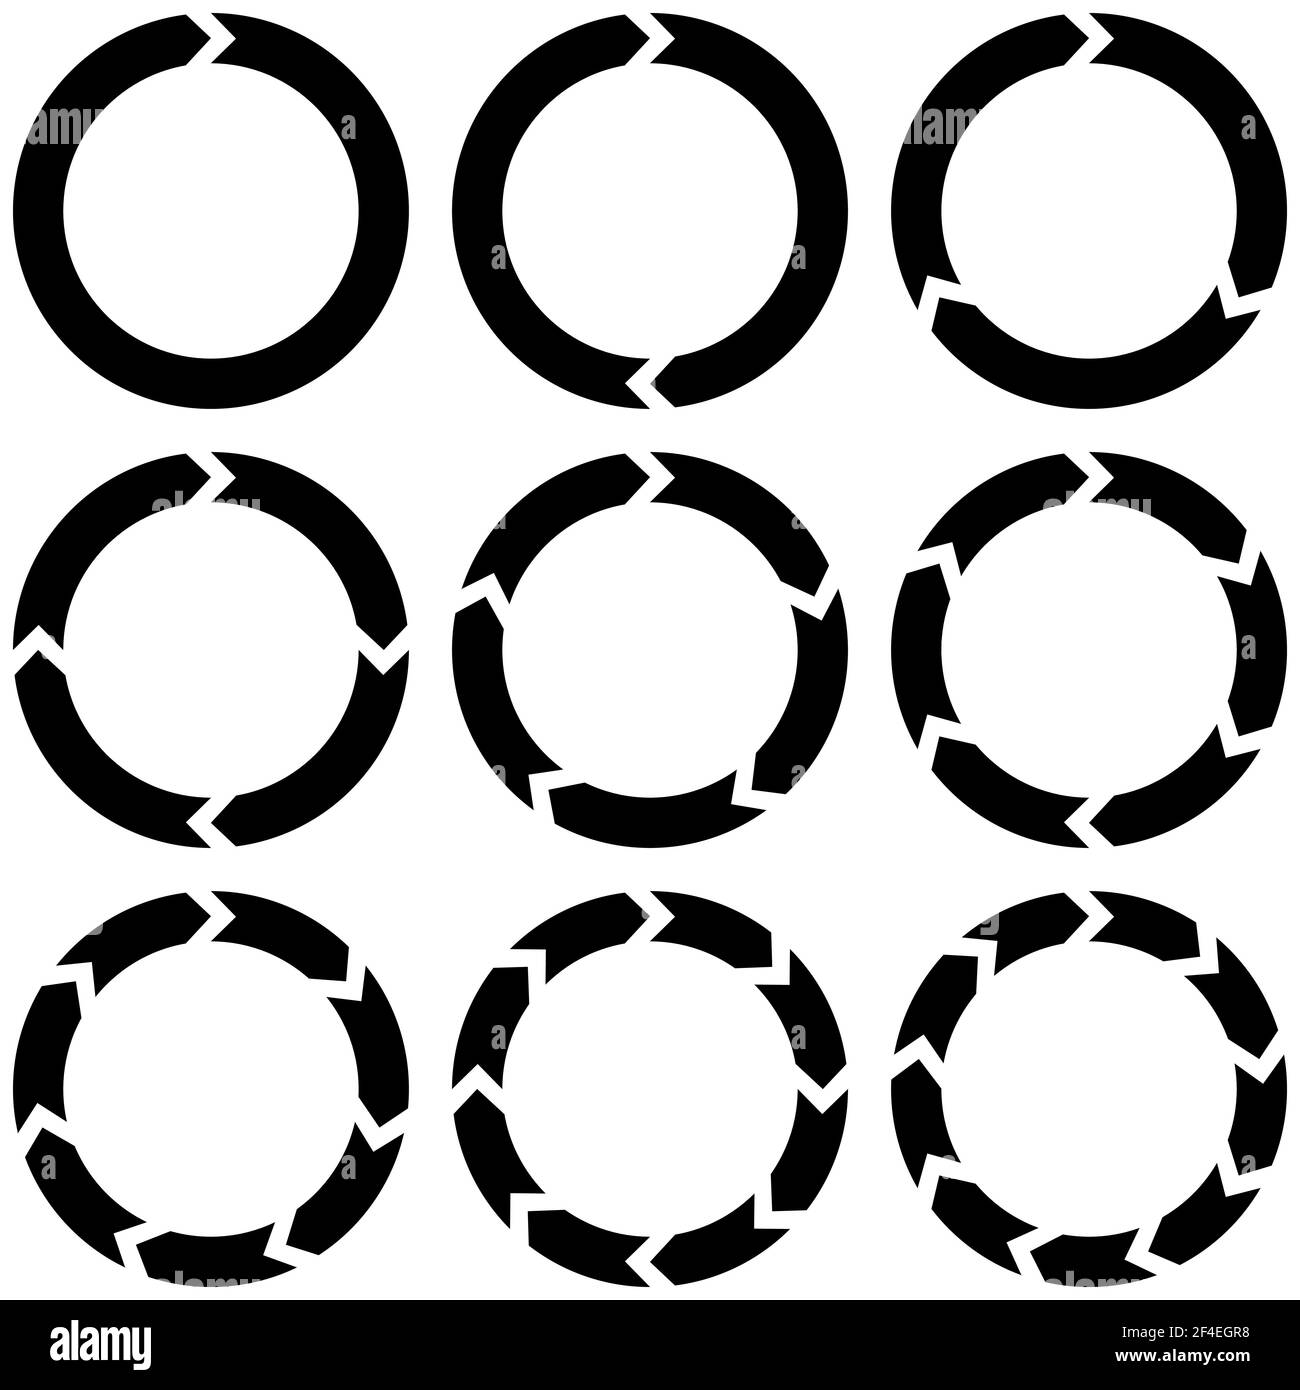 Définissez des infographies circulaires avec des flèches, des flèches rondes vectorielles continuité du mouvement recyclage panneau actualiser recharger Illustration de Vecteur